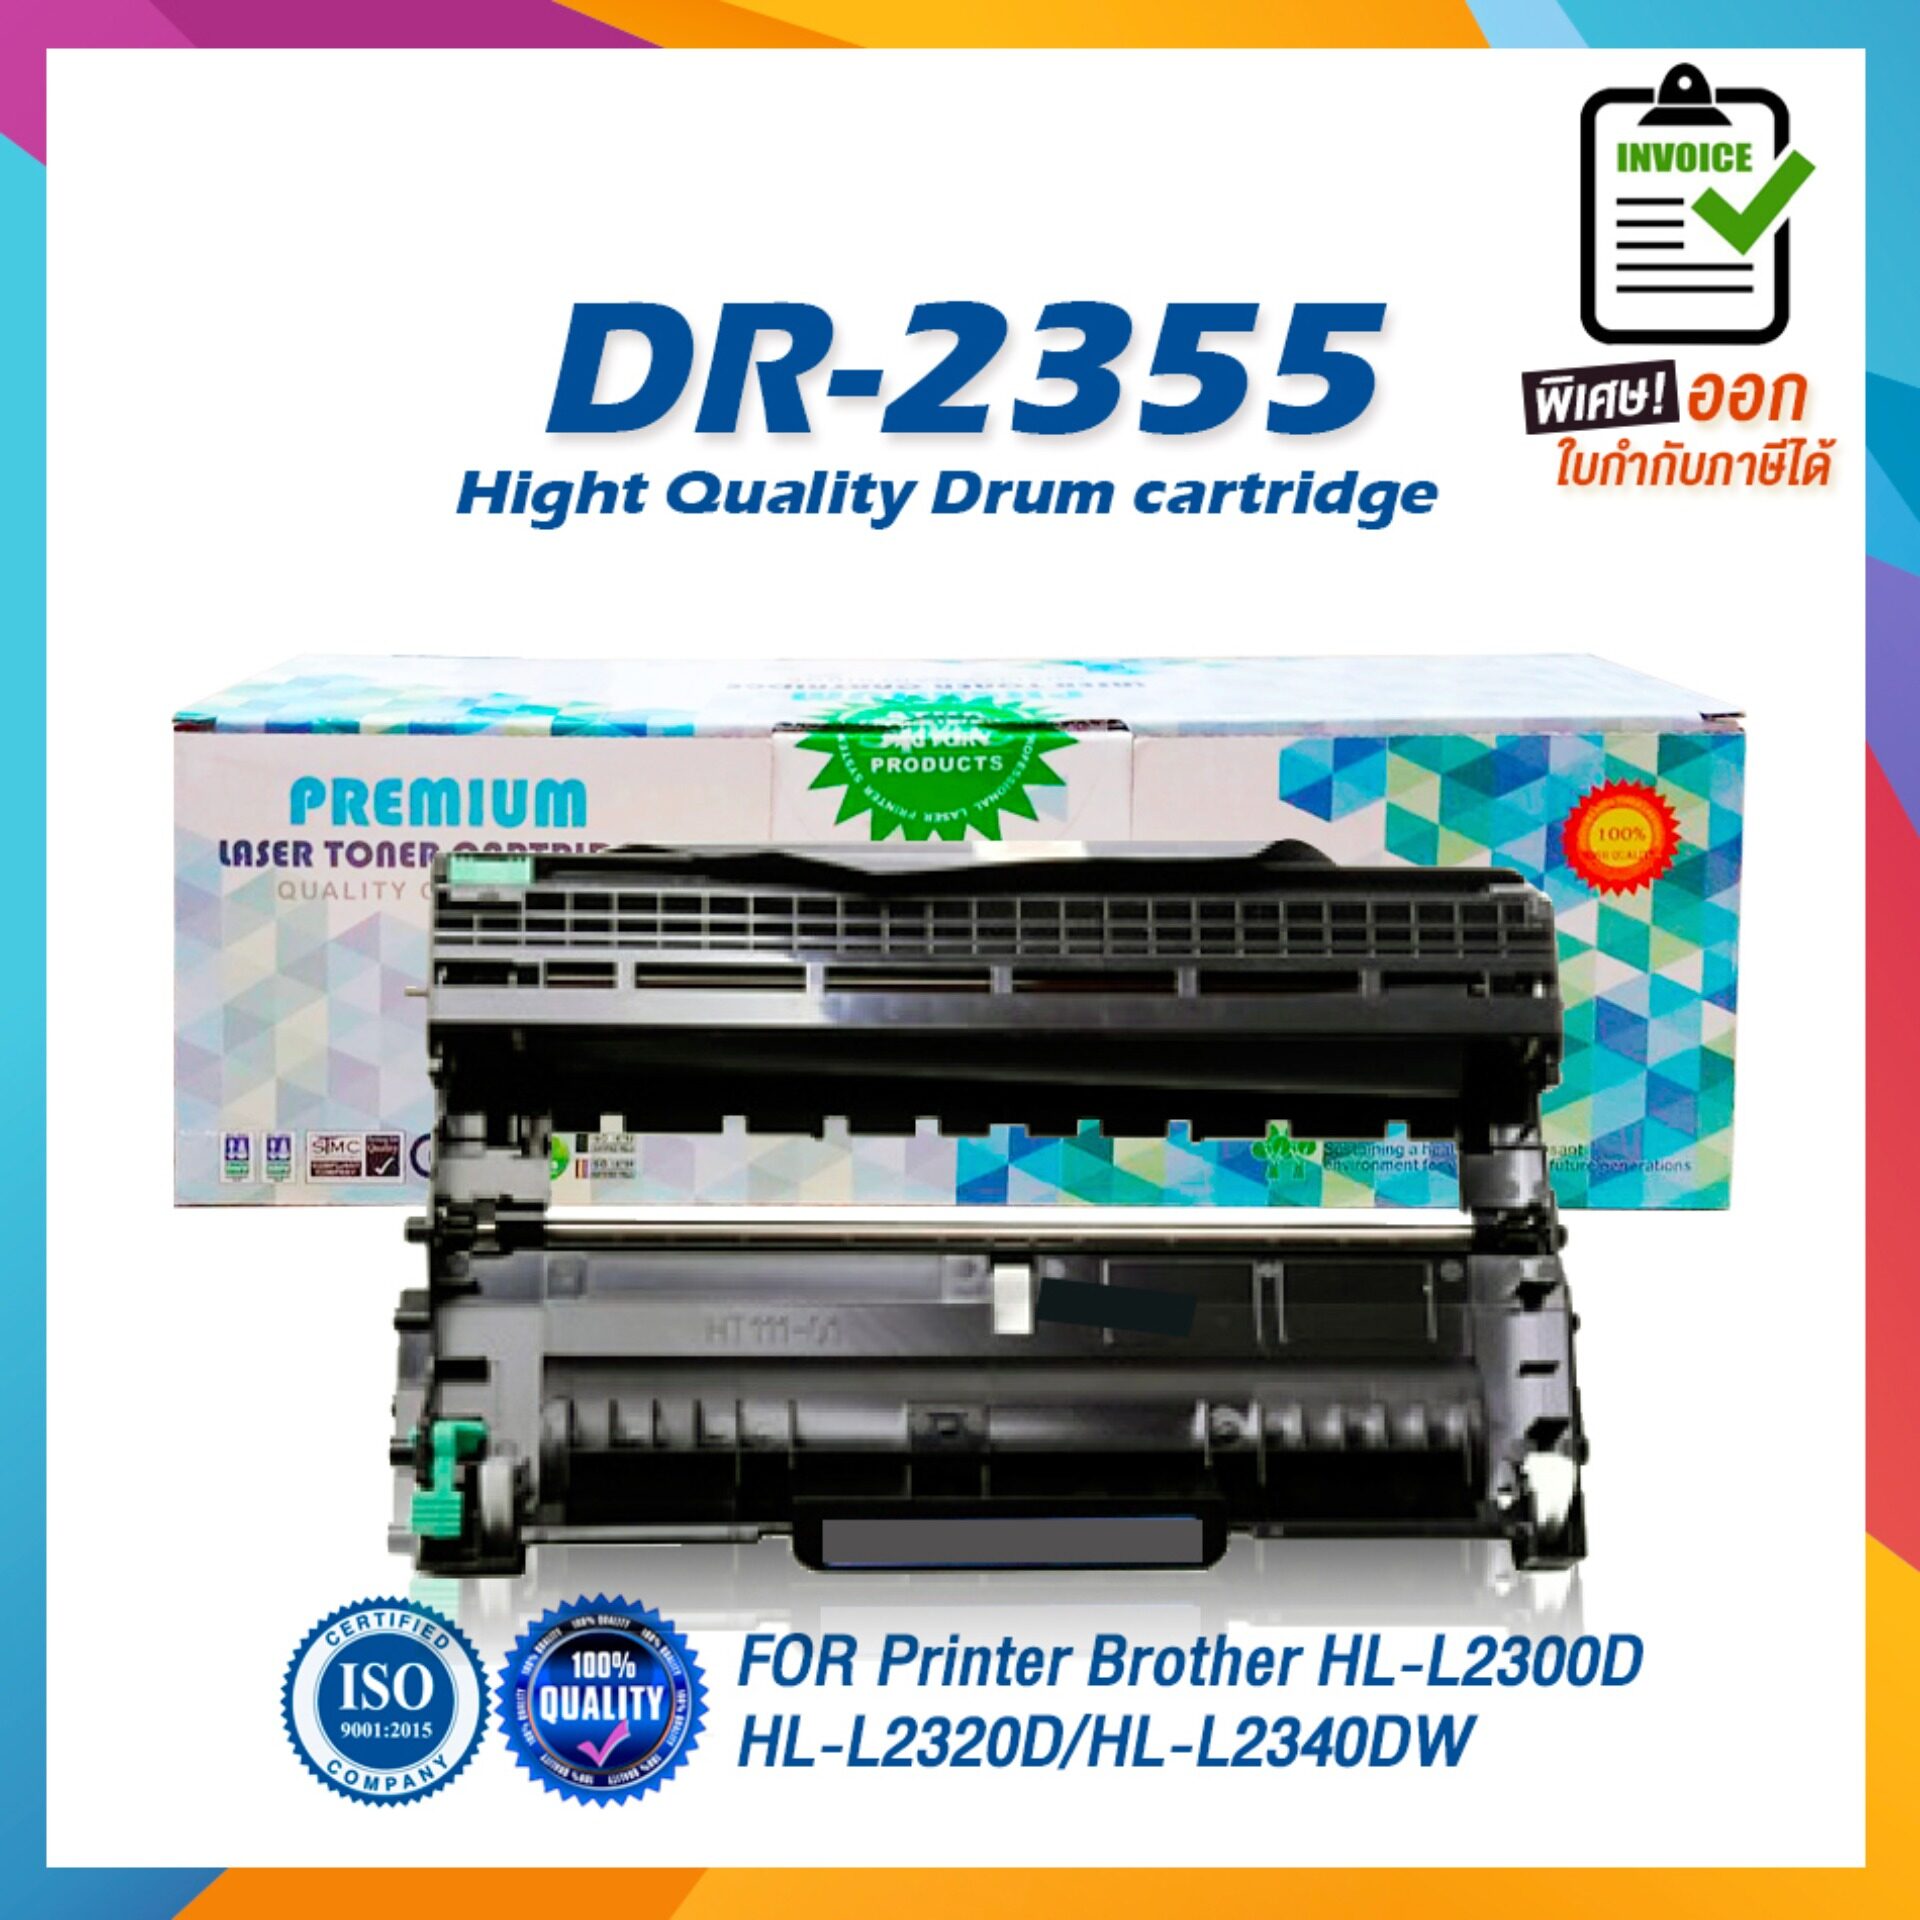 DR-2355 D2355 2355 DR2355 DRUM LASER TONER ตลับดรัมเลเซอร์ FOR Brother HL-L2320DHL-L2360DNHL-L2365DWDCP-L2520DDCP-L2540DWMFC-L2700DMFC-L2700DWMFC-L2740DW